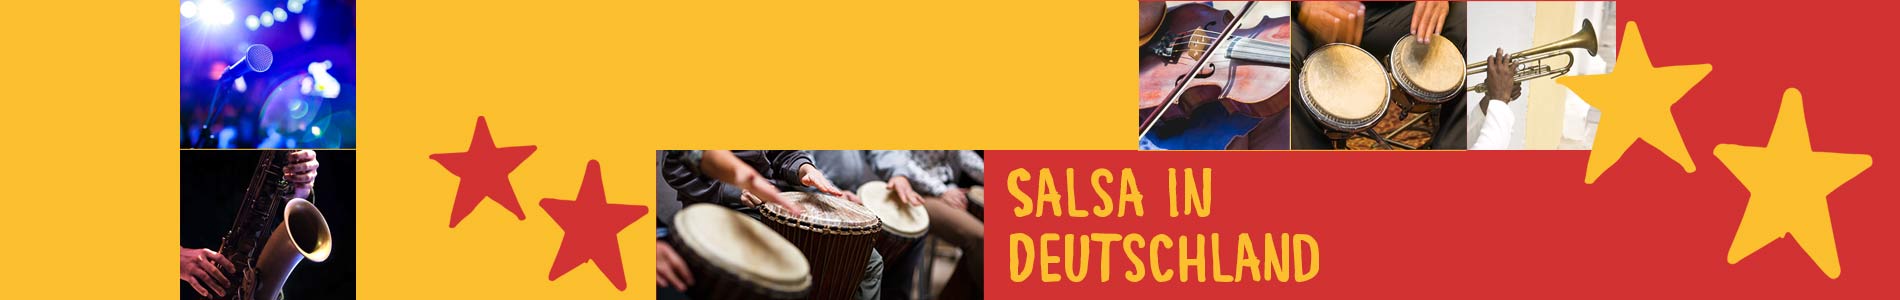 Salsa in Brekendorf – Salsa lernen und tanzen, Tanzkurse, Partys, Veranstaltungen